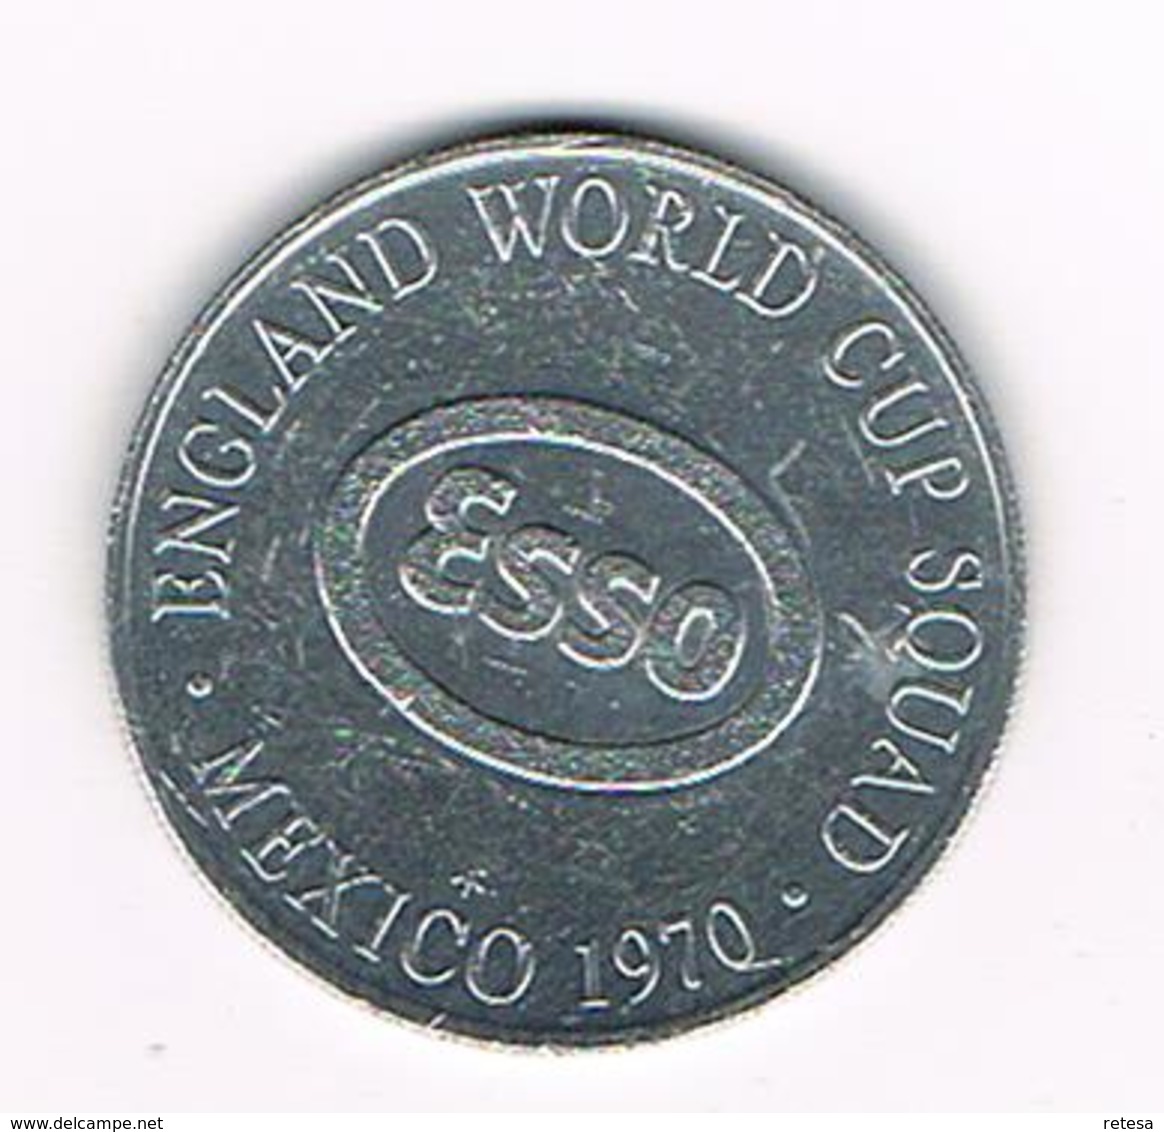 //  TOKEN  BRIAN LABONE   ENGLAND WORLD CUP  SQUAD  MEXICO  1970 ESSO - Pièces écrasées (Elongated Coins)